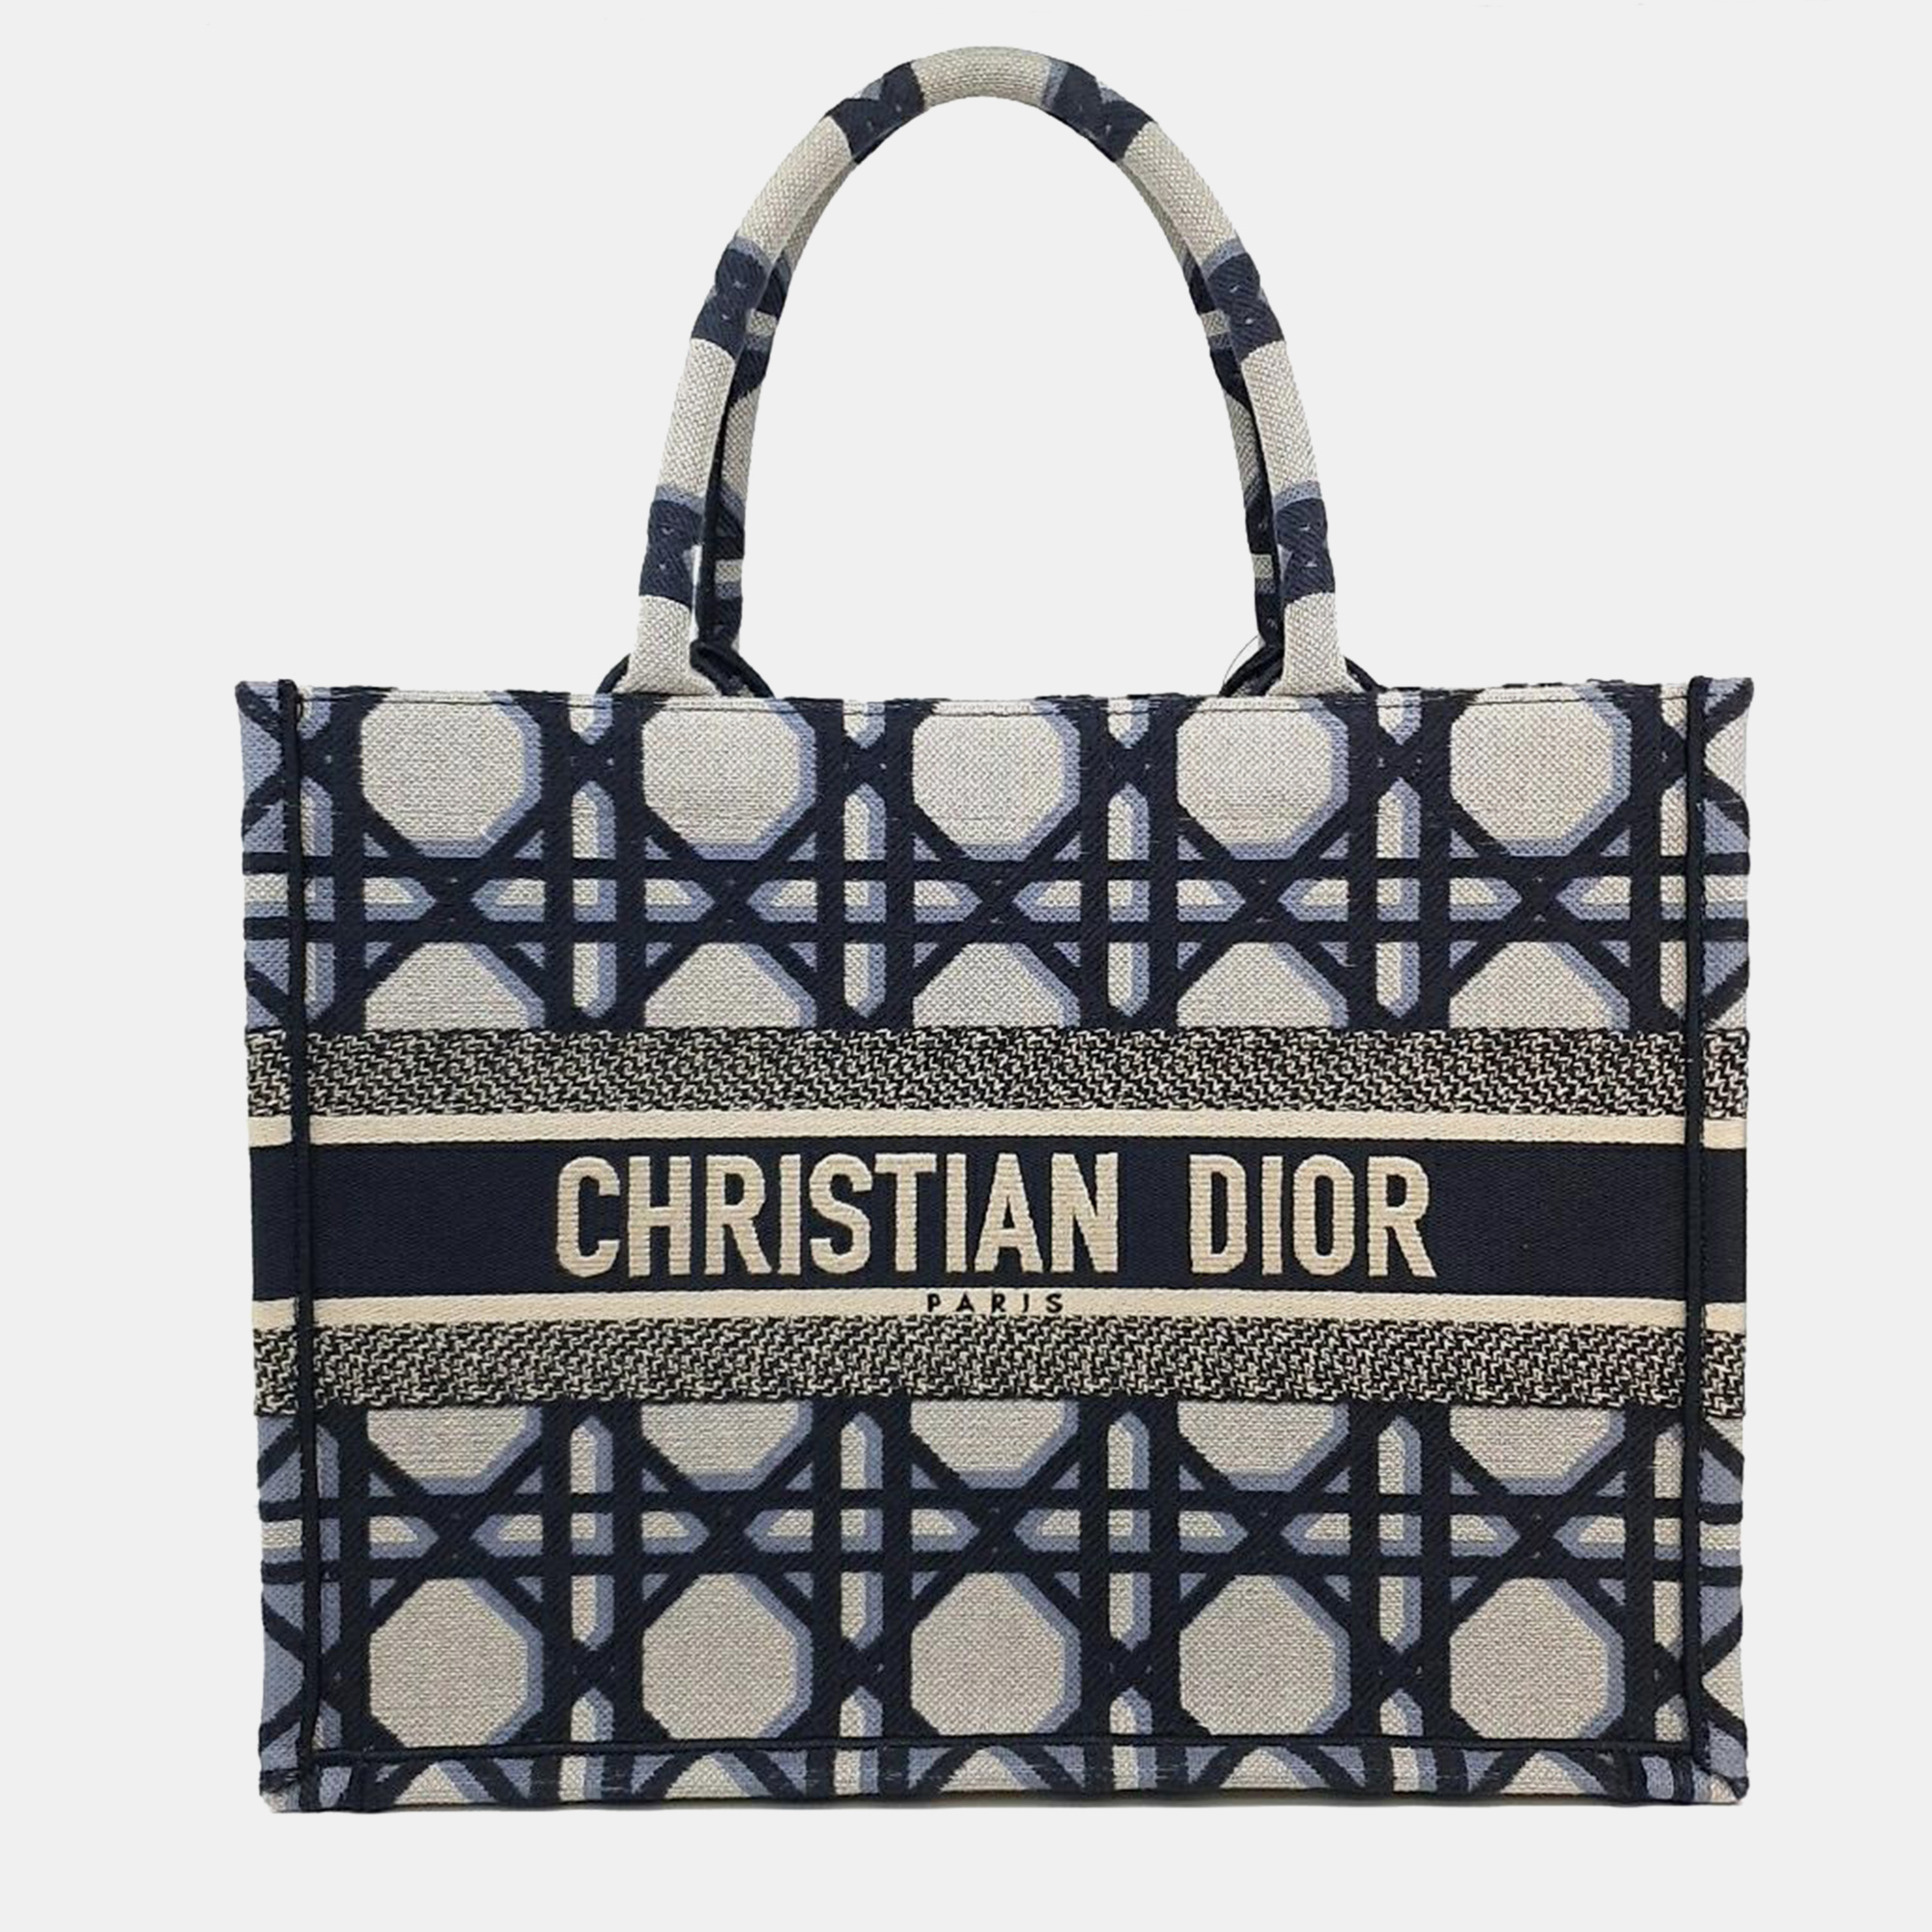 

Christian Dior Book Tote Handbag 36 M1296, Navy blue